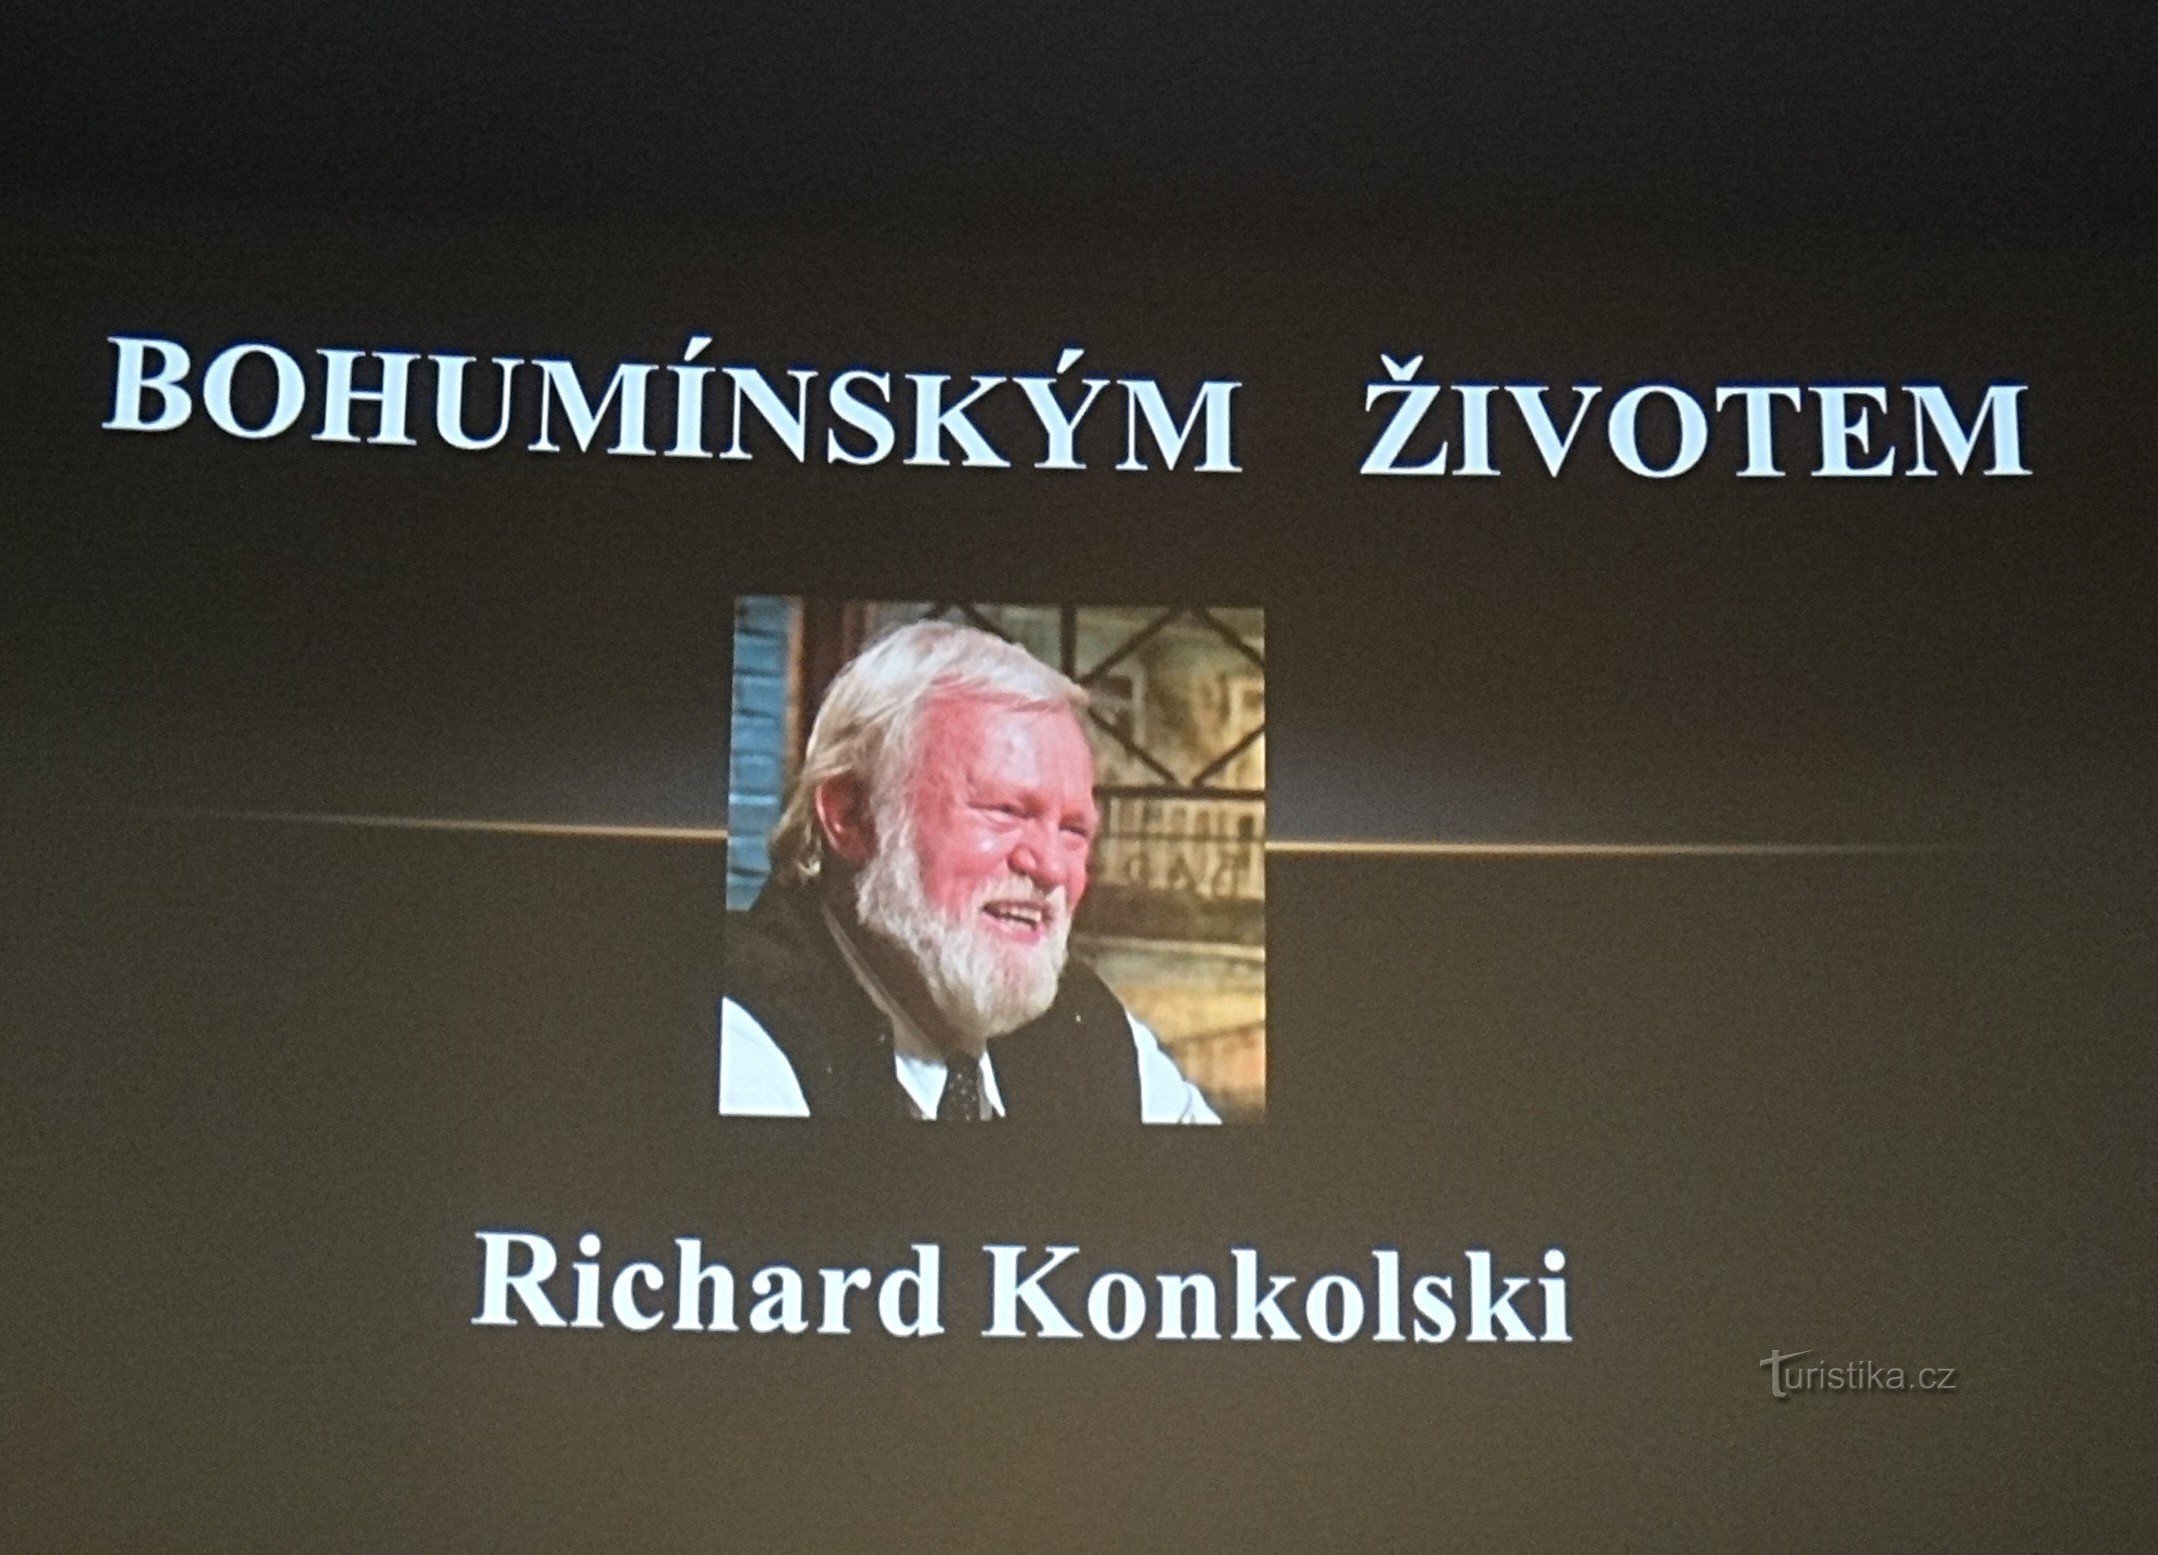 Richard Konkolski habla en el cine